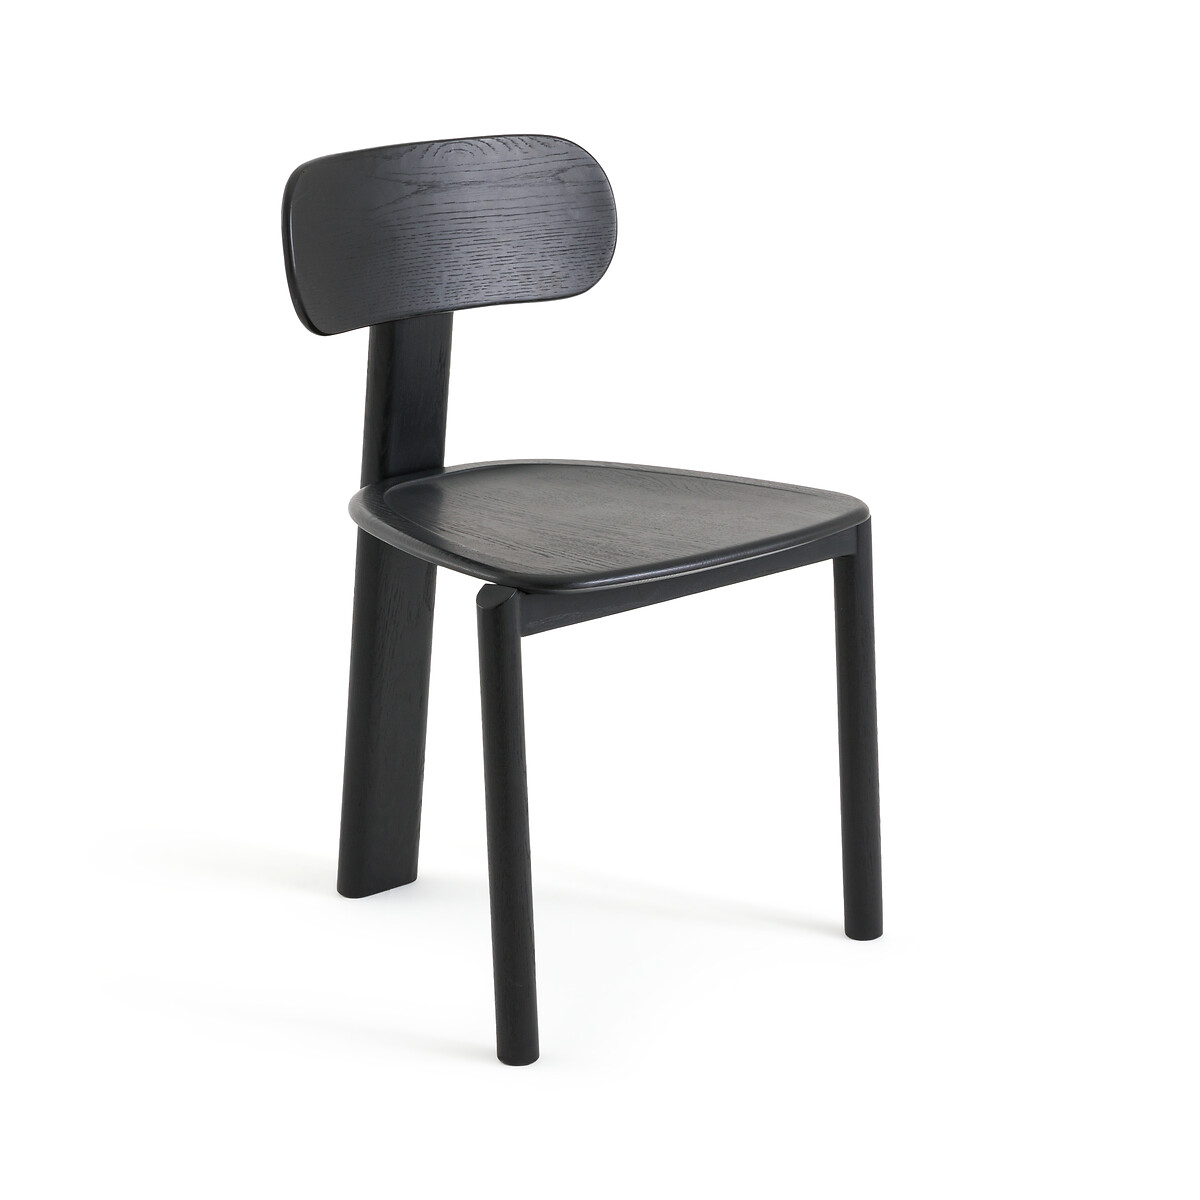 Стул из окрашенного дуба Marais дизайн Э Галлина единый размер черный стул с обивкой из буклированной ткани дизайн э галлина marais единый размер каштановый